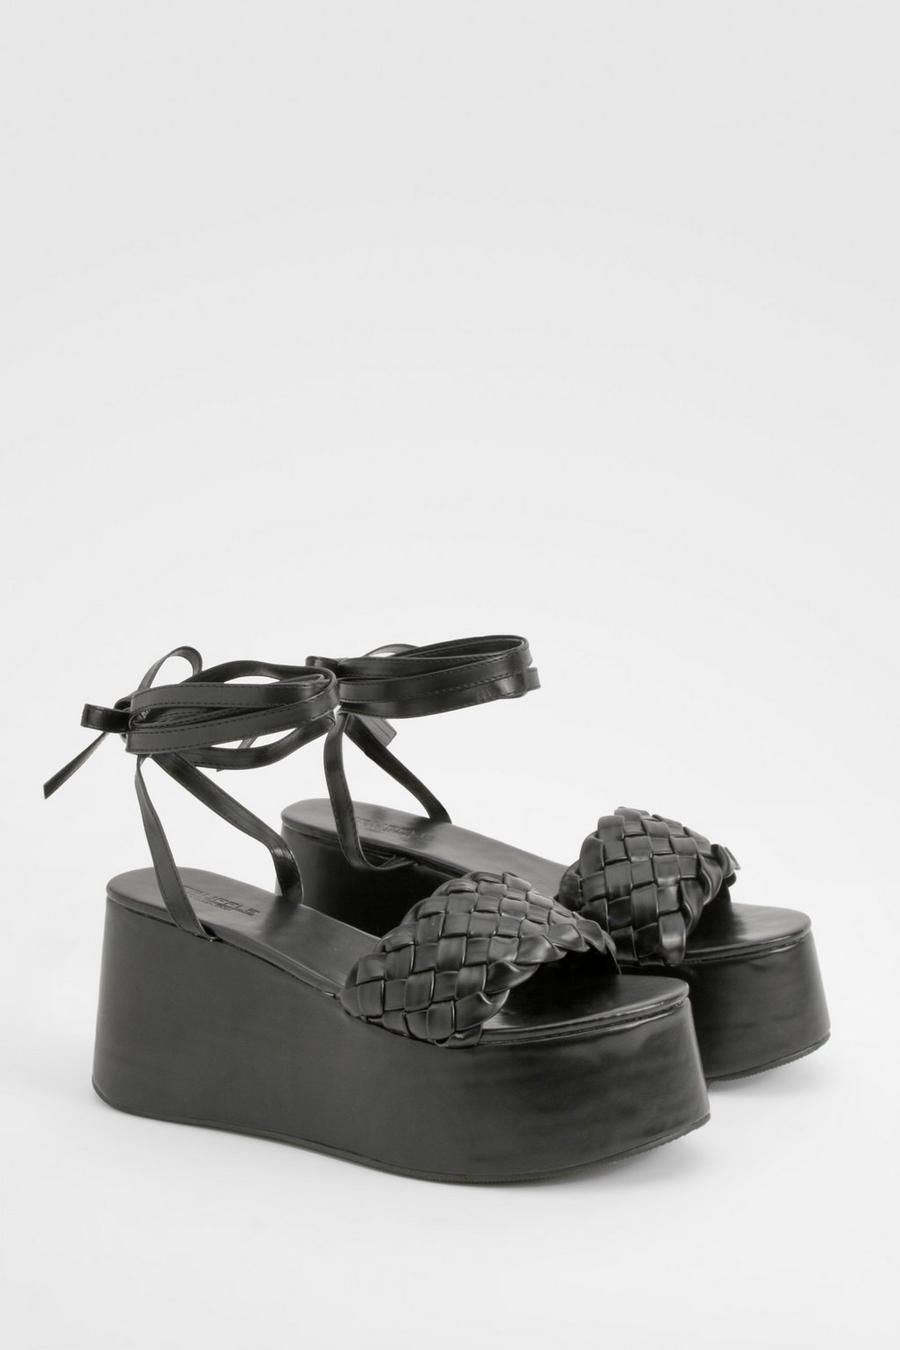 Sandali Flatform con laccetti alla caviglia, Black